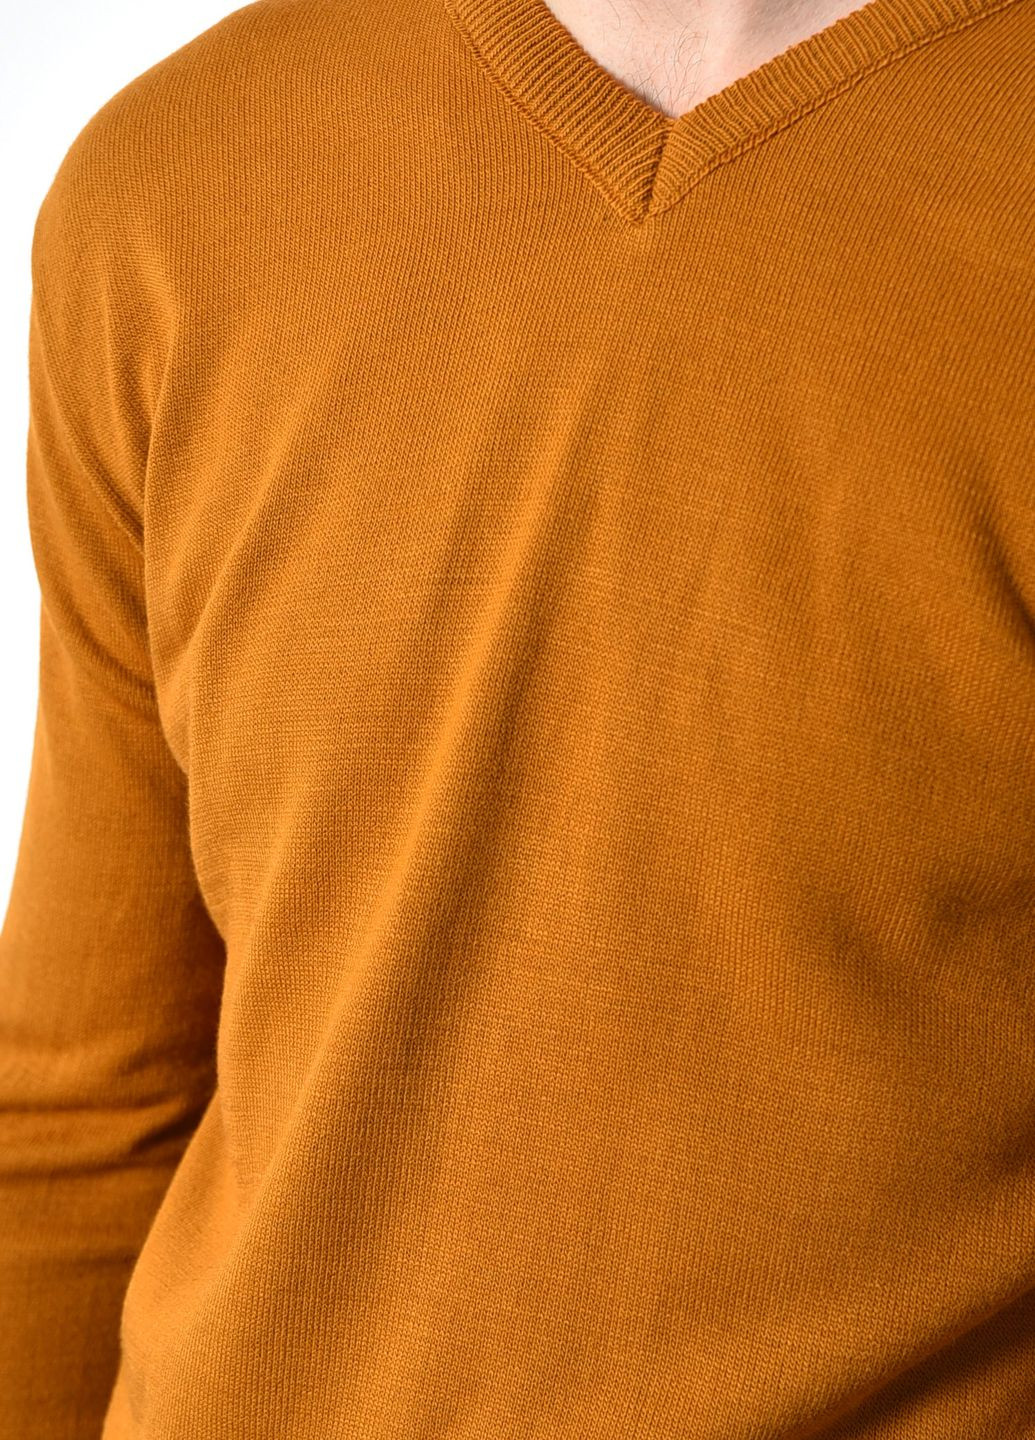 Коричневый демисезонный свитер мужской полубатальный коричневого цвета пуловер Let's Shop